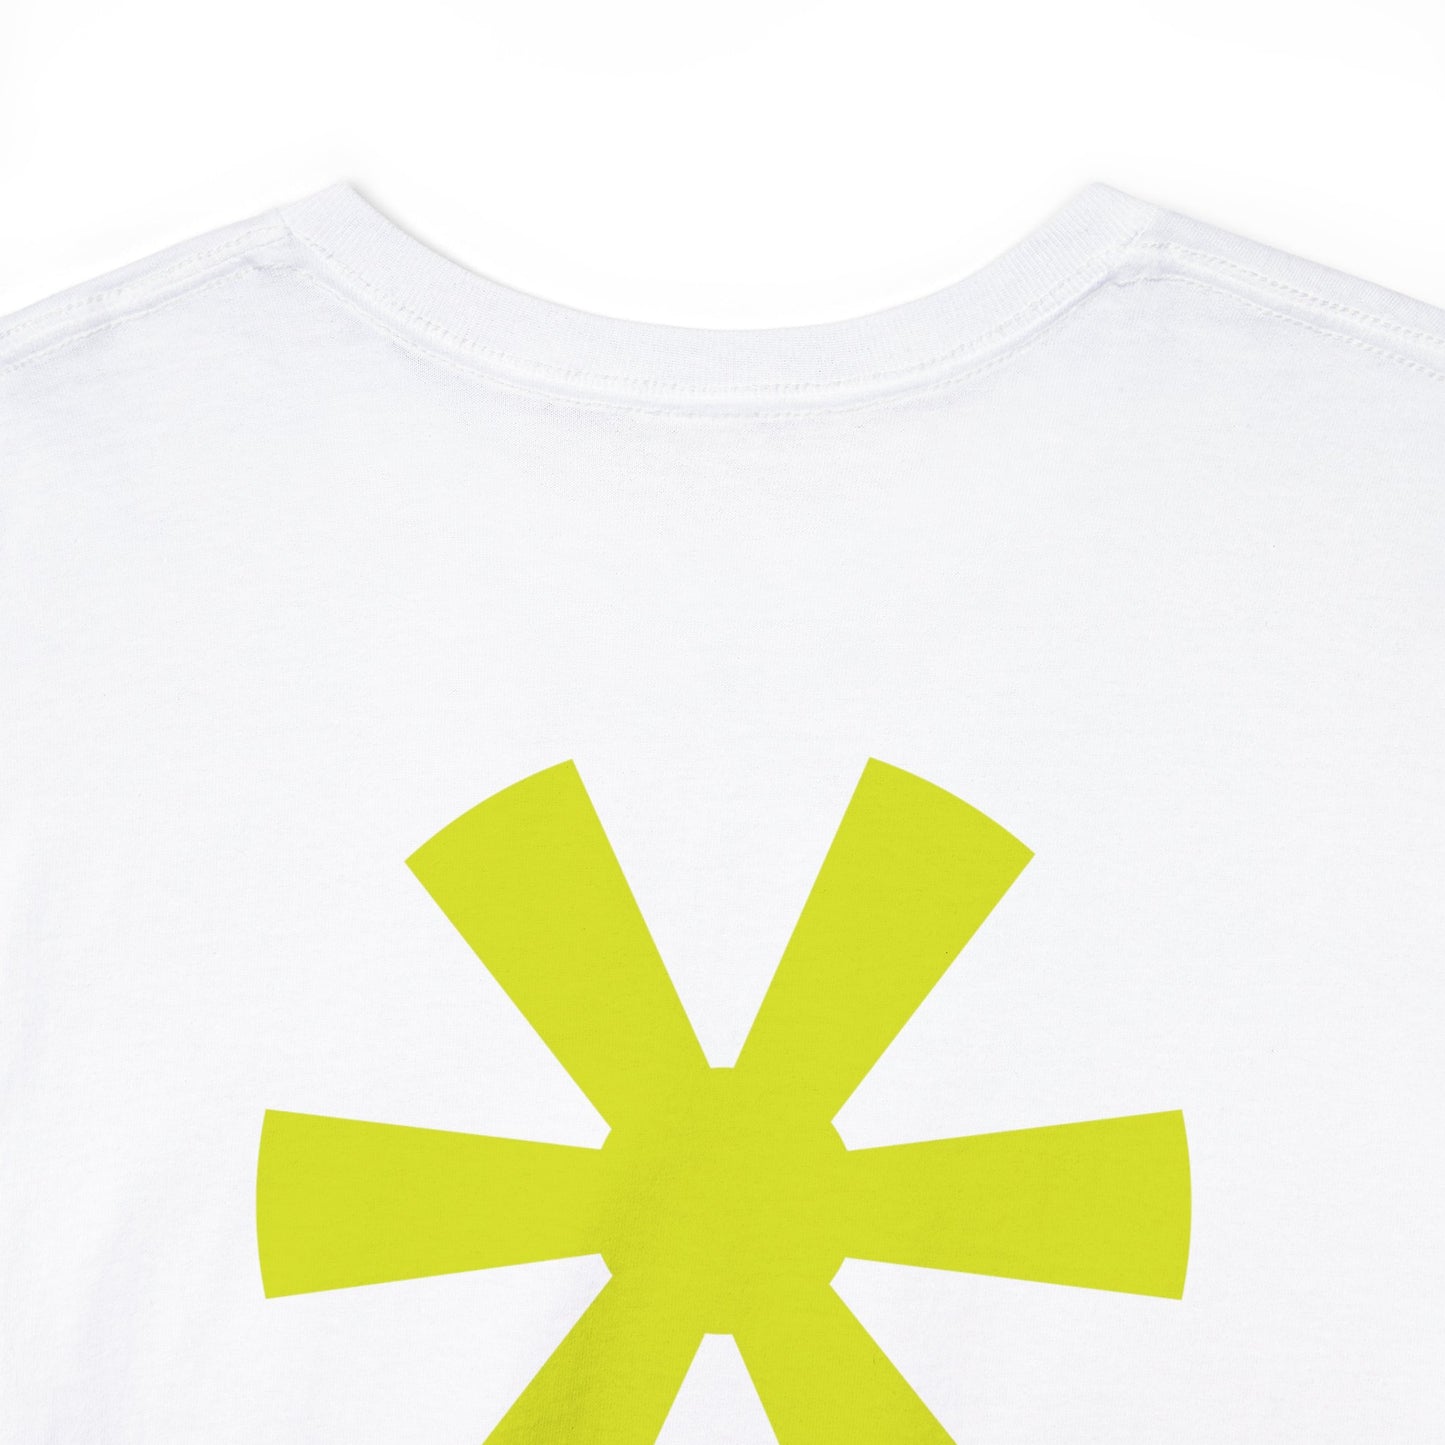 Camiseta de algodón pesado de la costa sur | Estrella amarilla